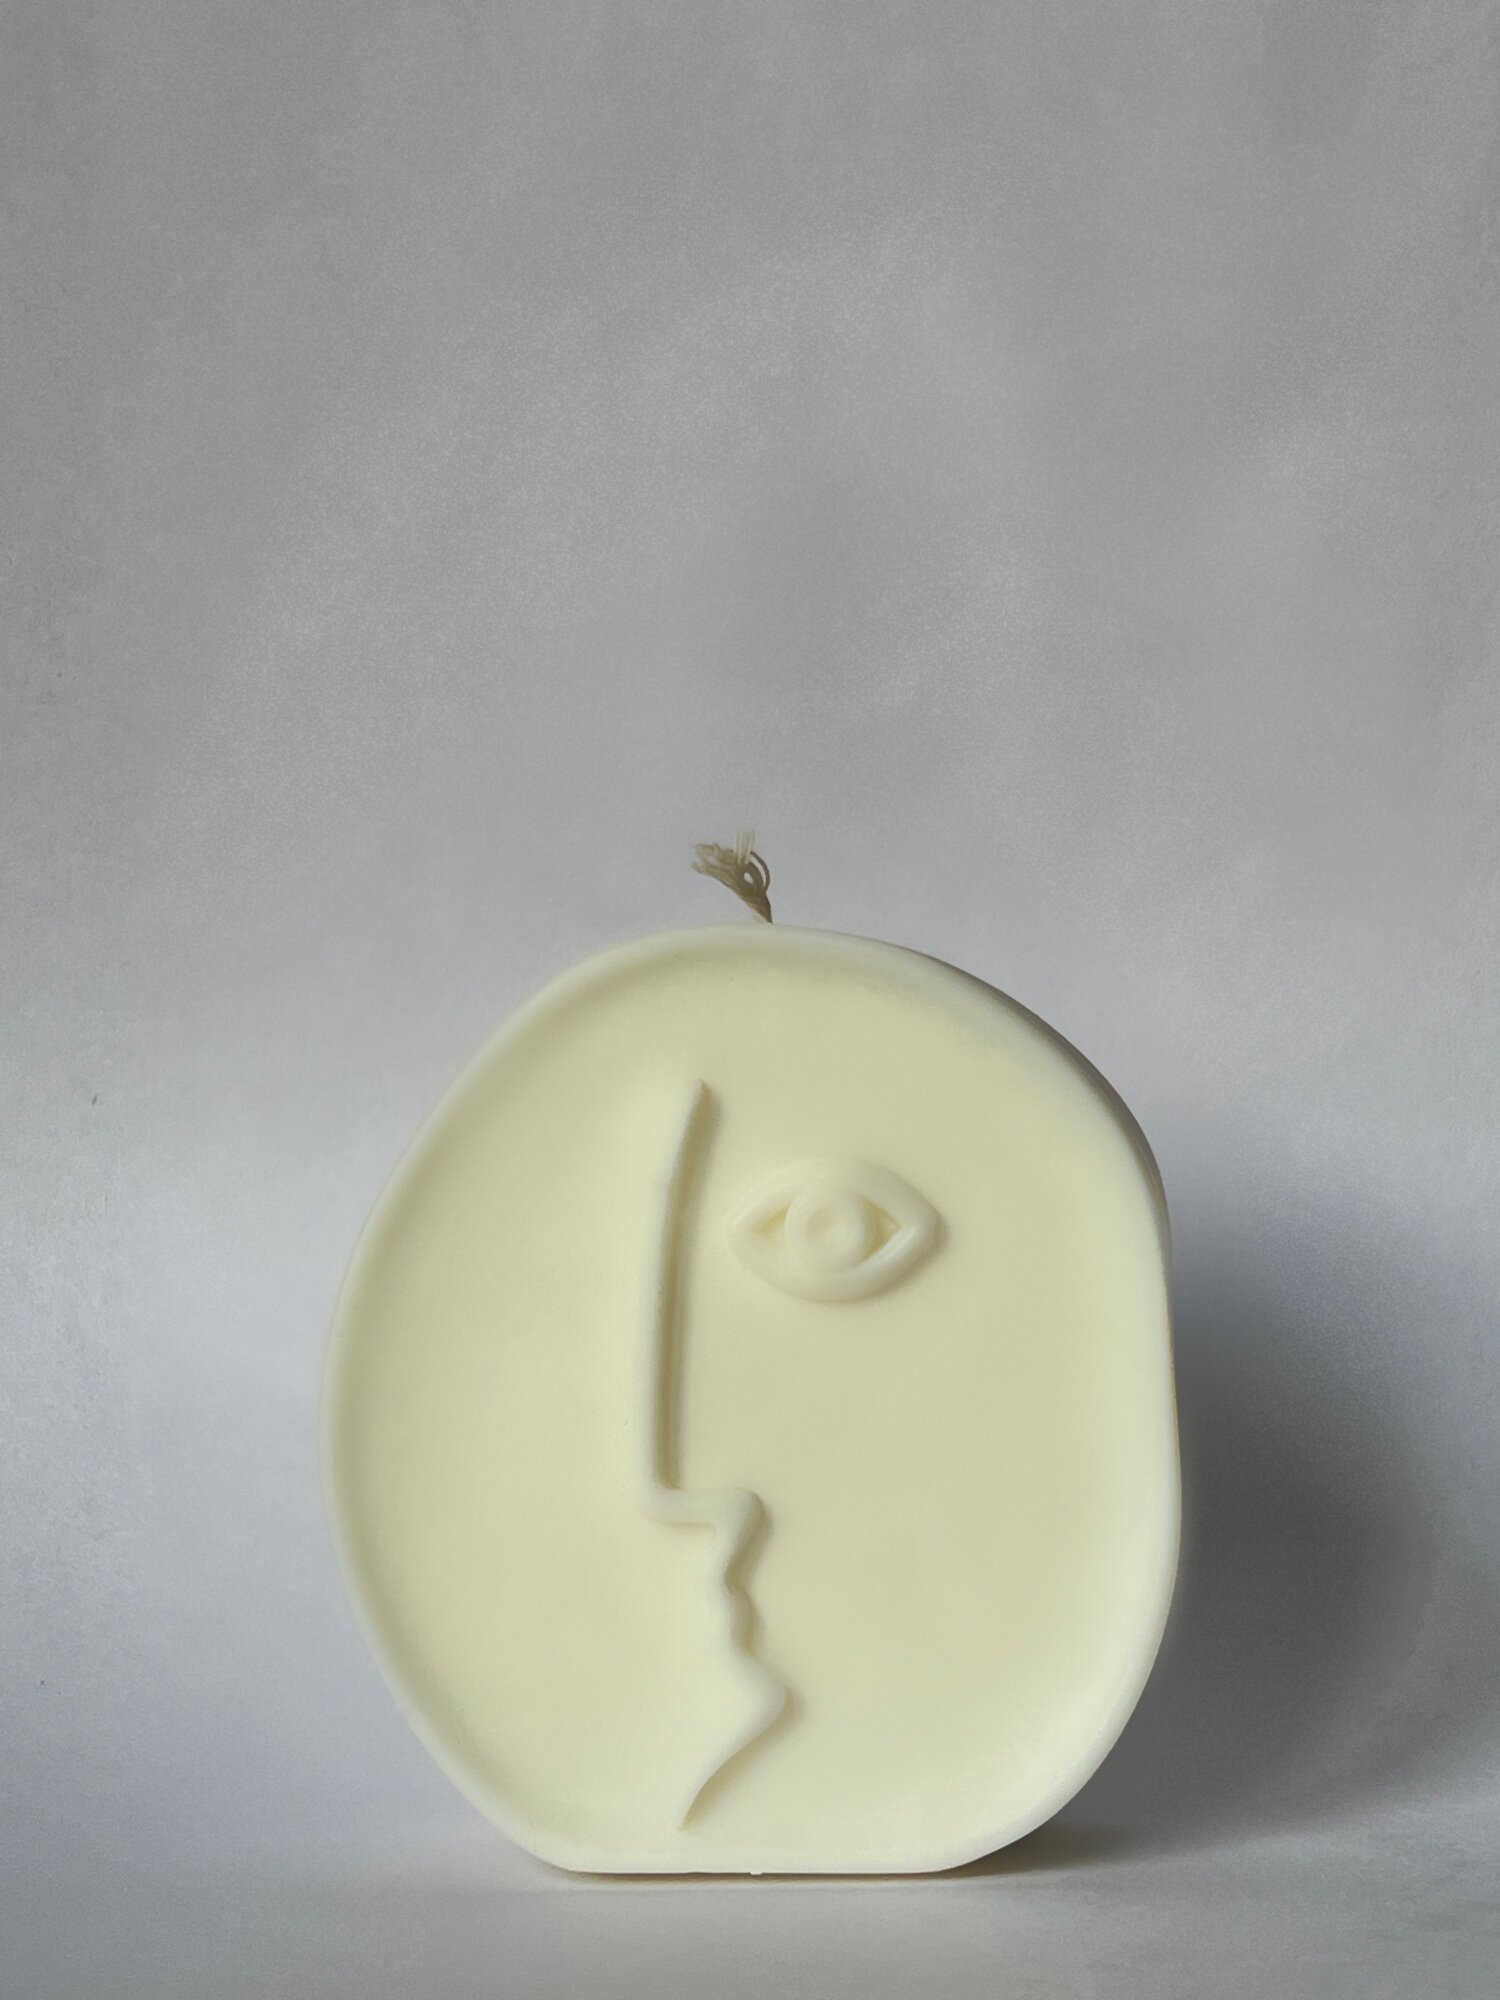 Интерьерная свеча ручной работы "Лицо" с ароматом шоколада, 8х7х2 см